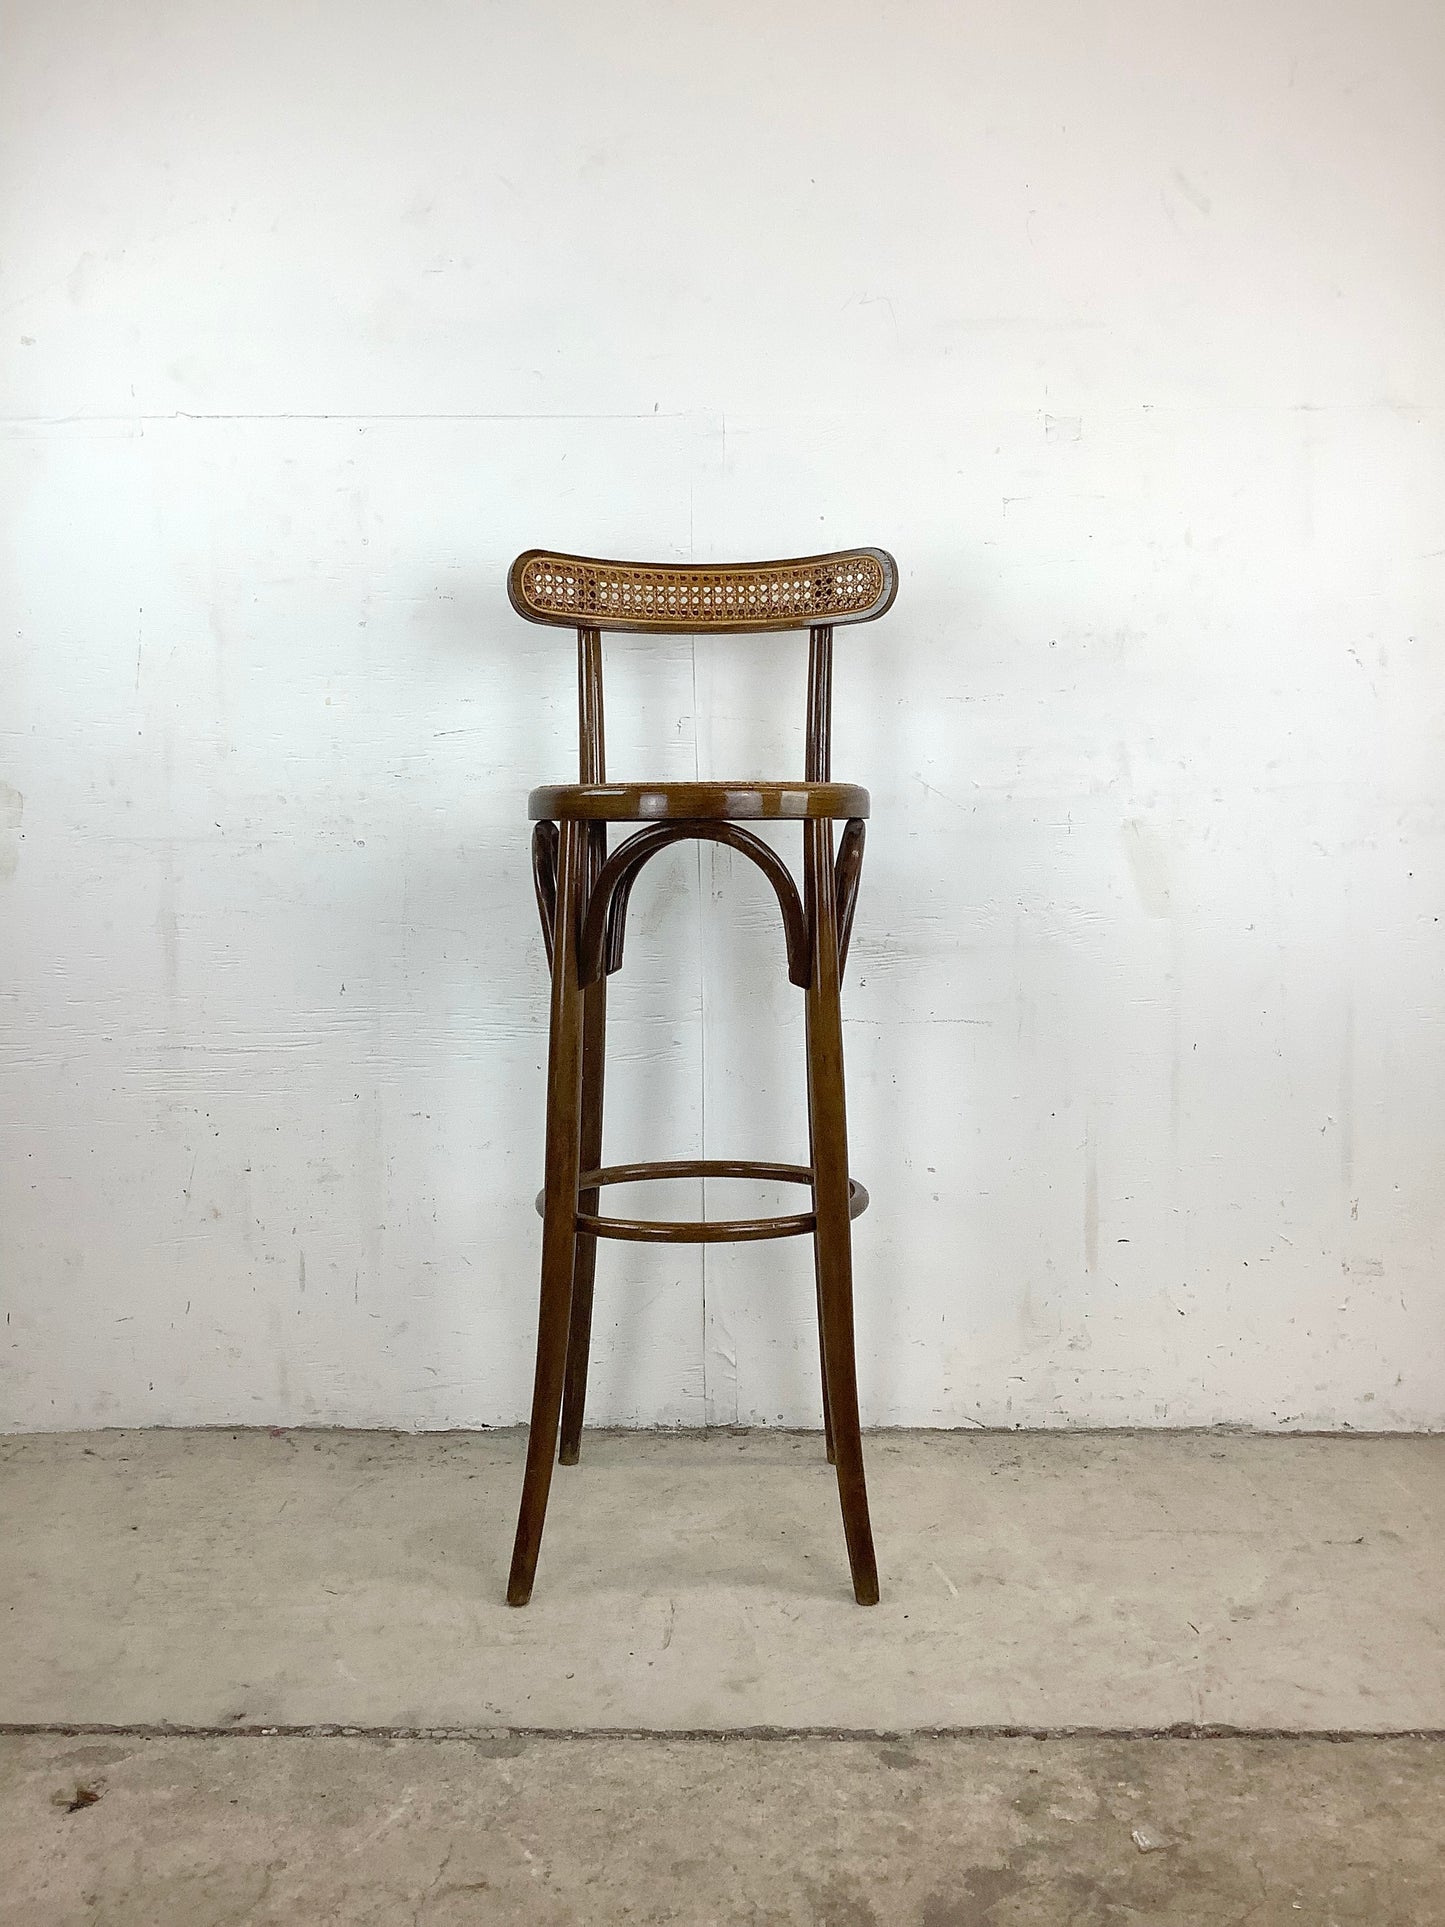 Vintage Cane Seat Thonet Style Barstool